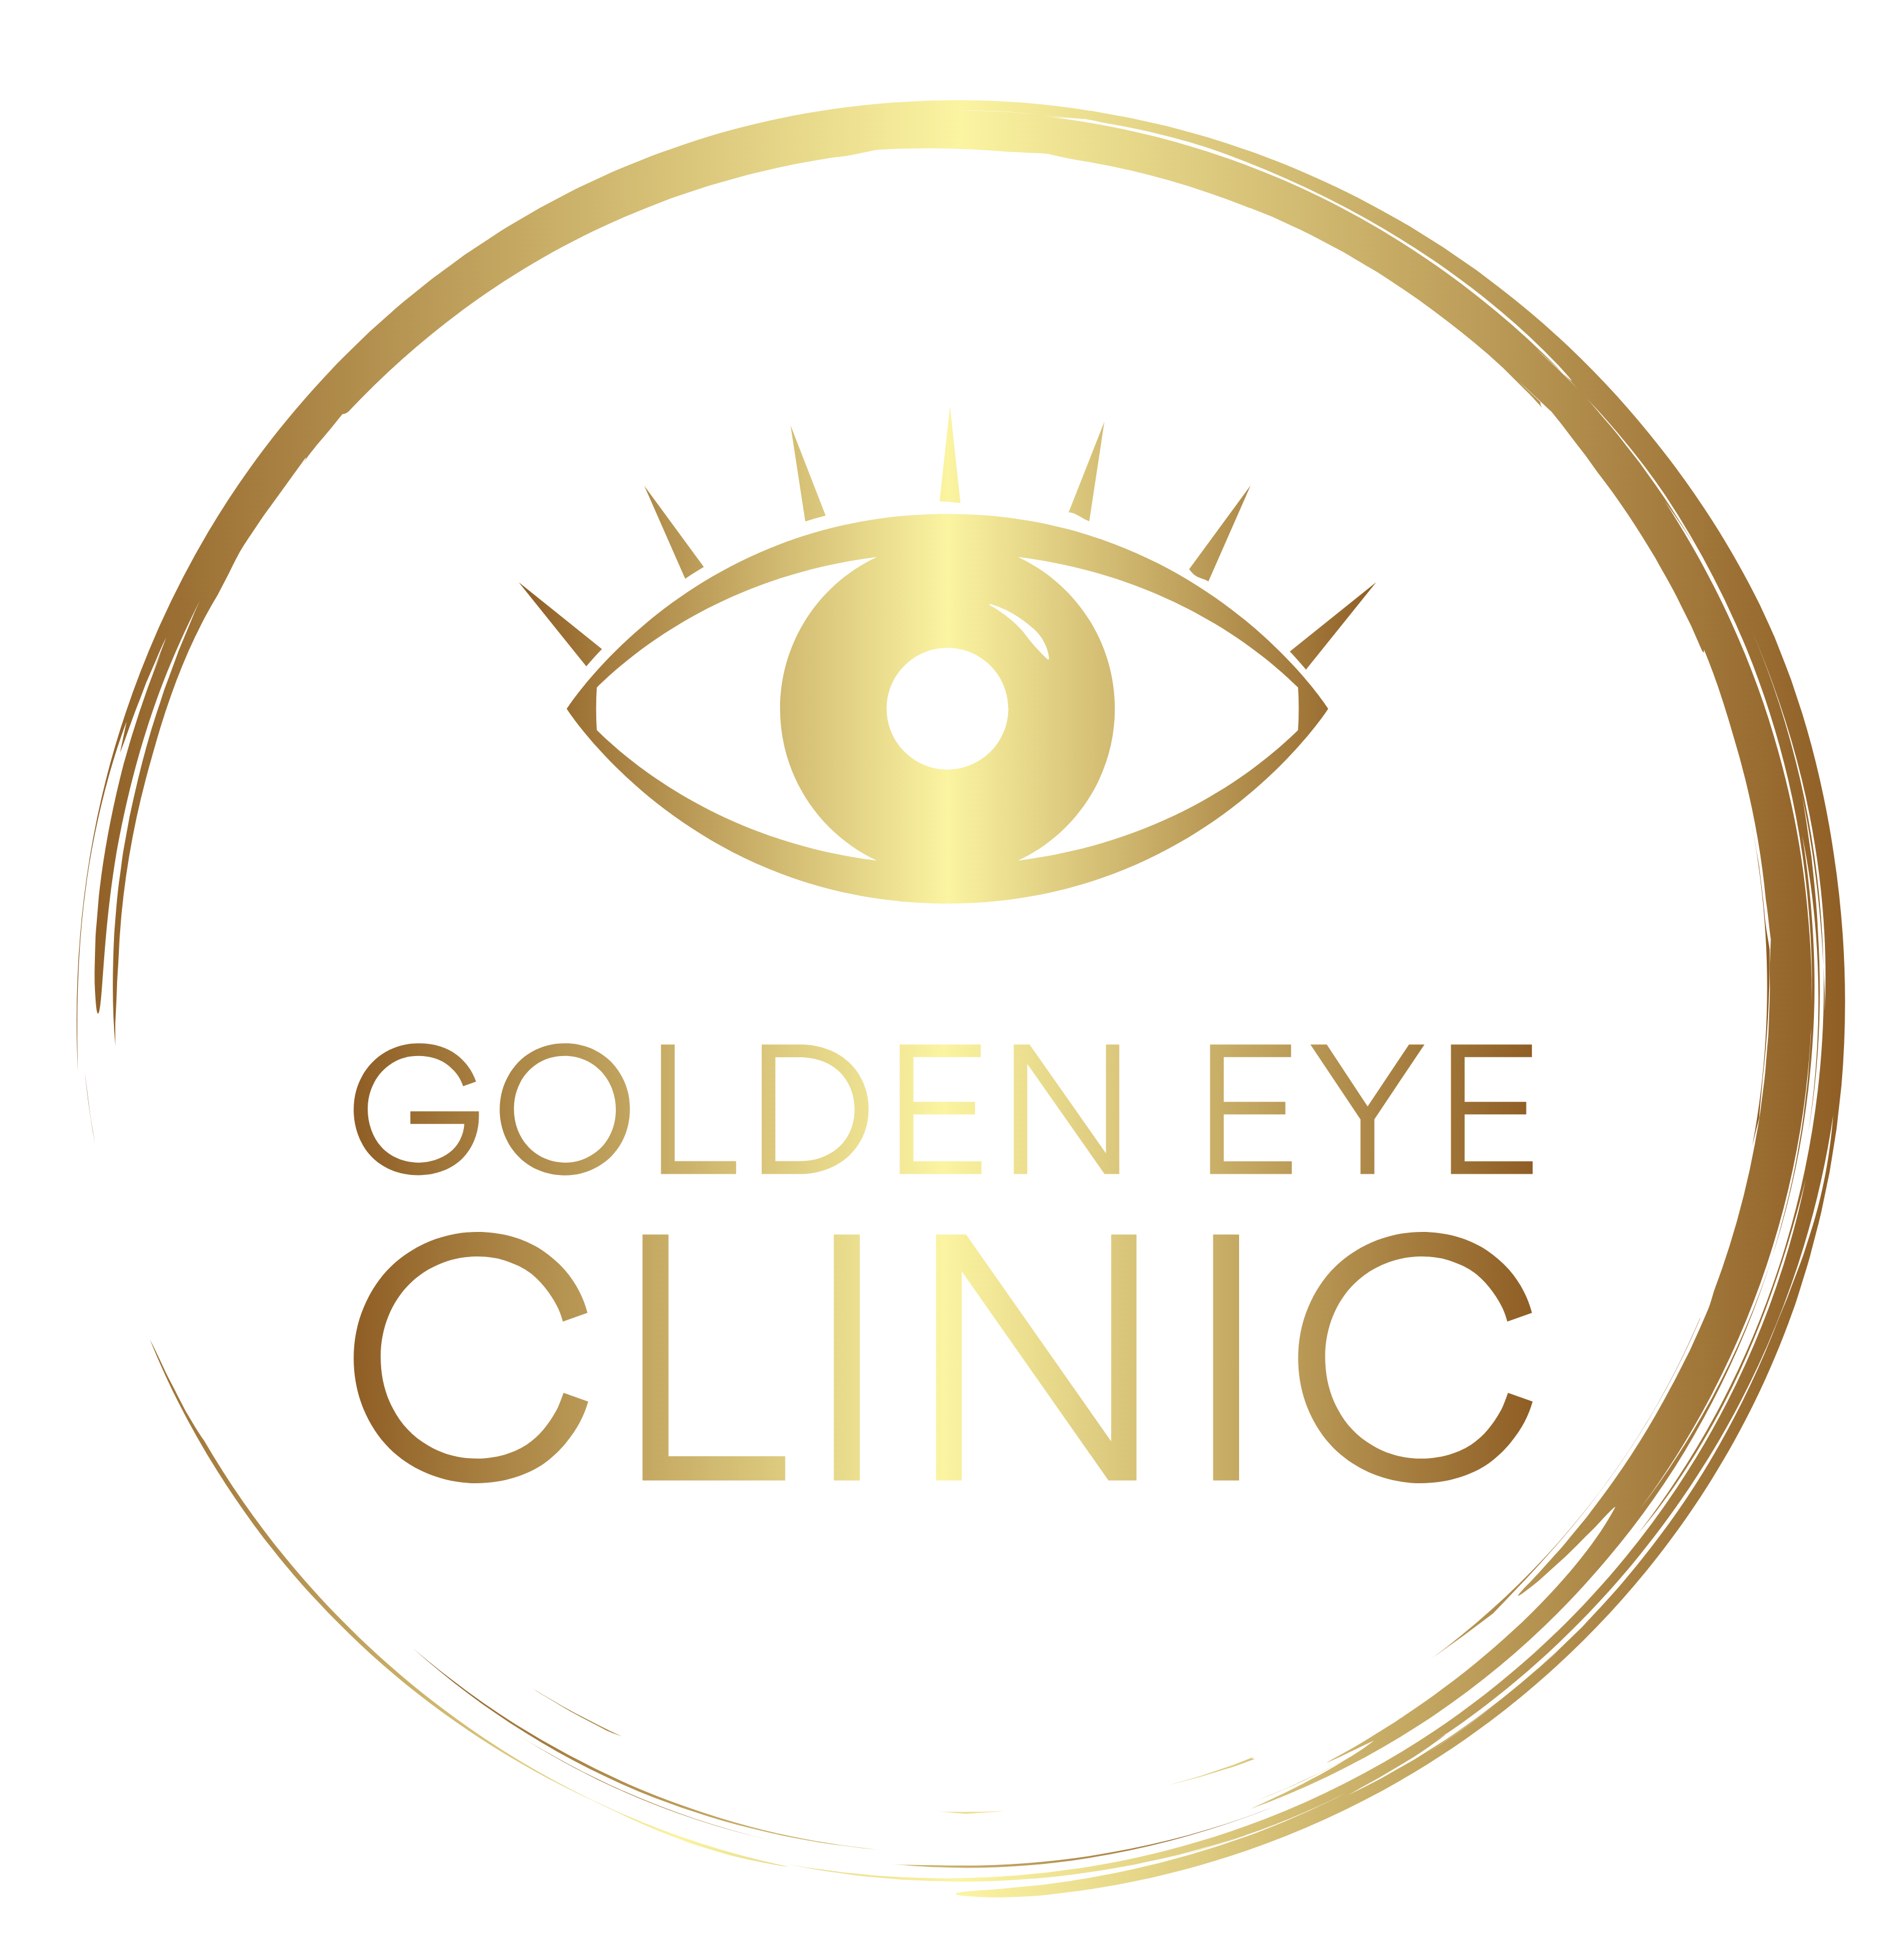 Golden Eye Clinic